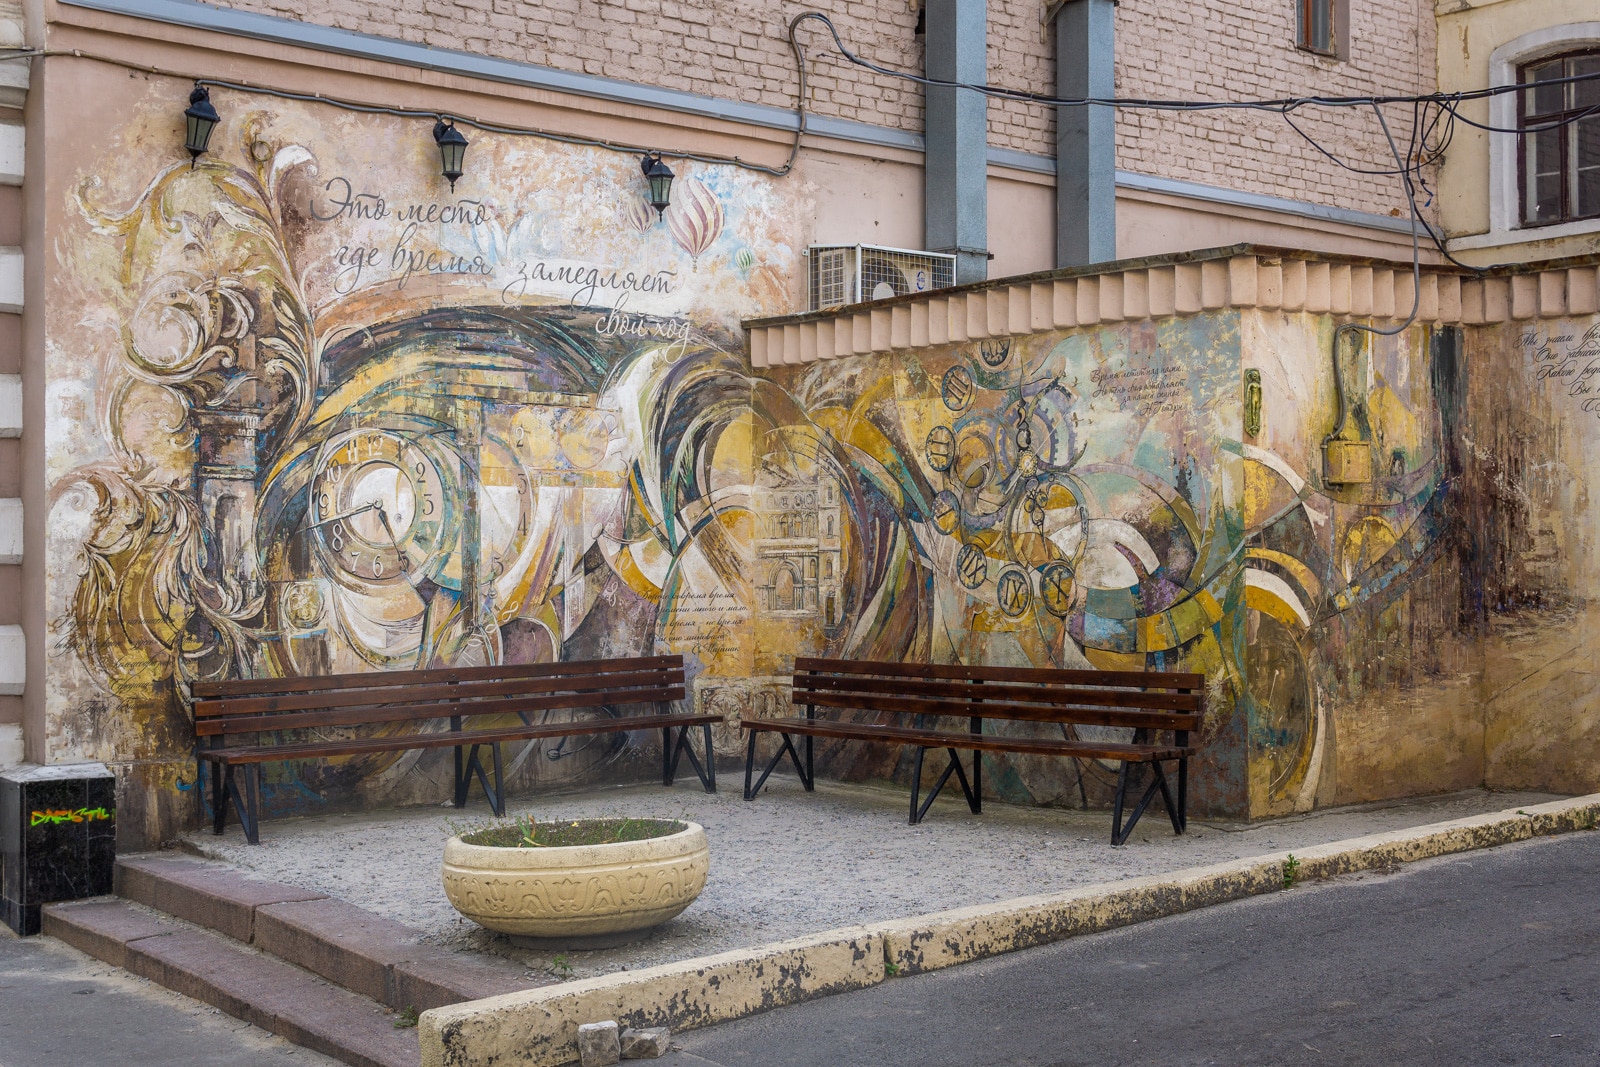 Street art in Kharkiv, Ukraine